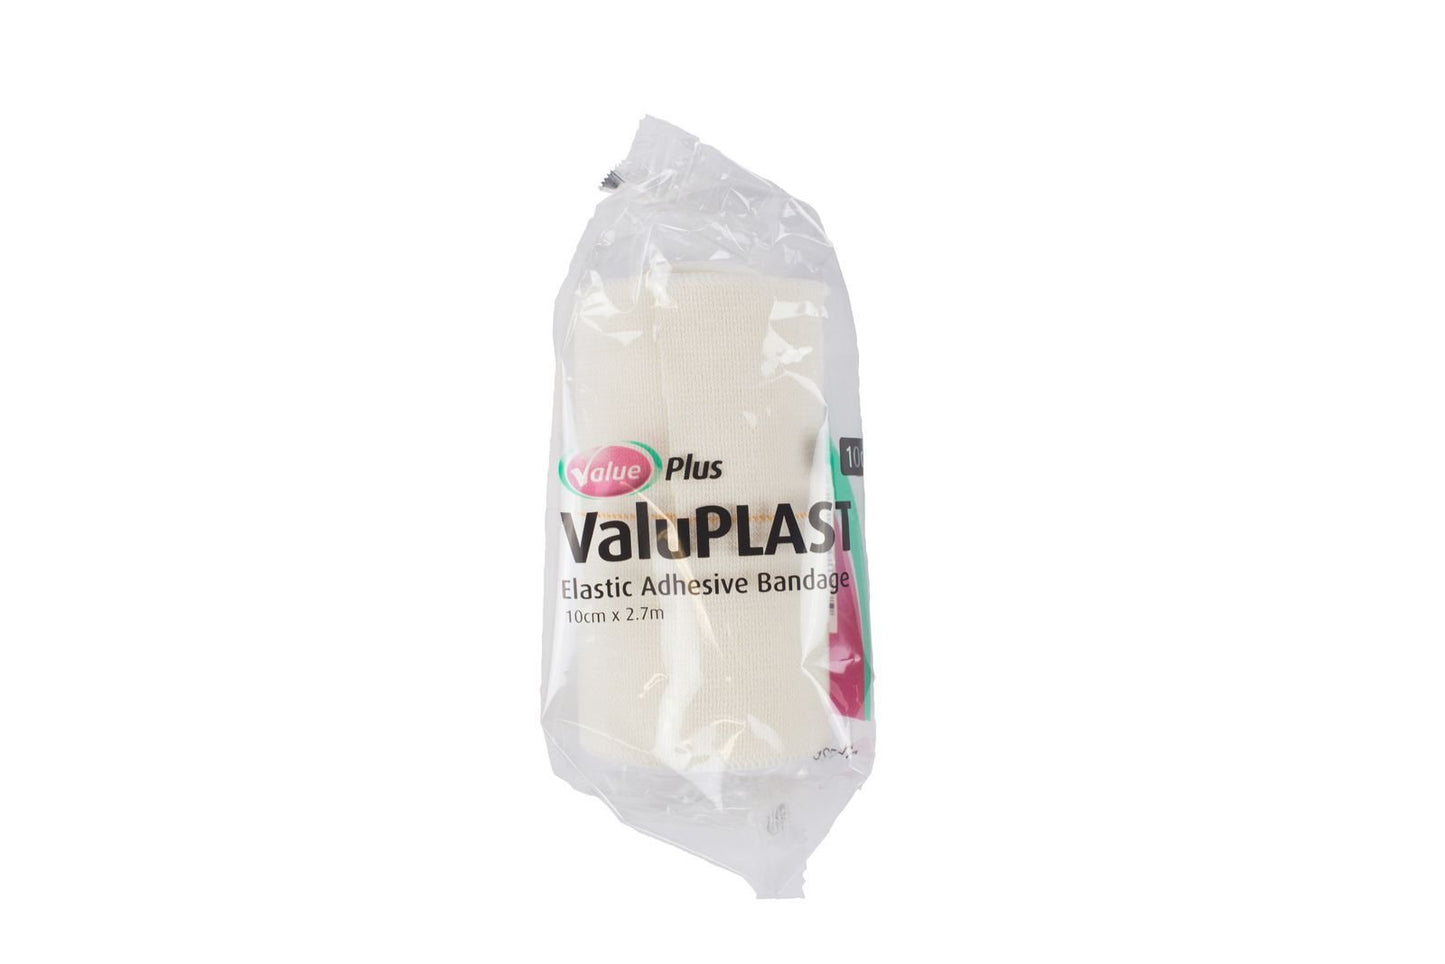 Value Plus Valuplast Elastic Adhesive Bandage - Woonona Petfood & Produce